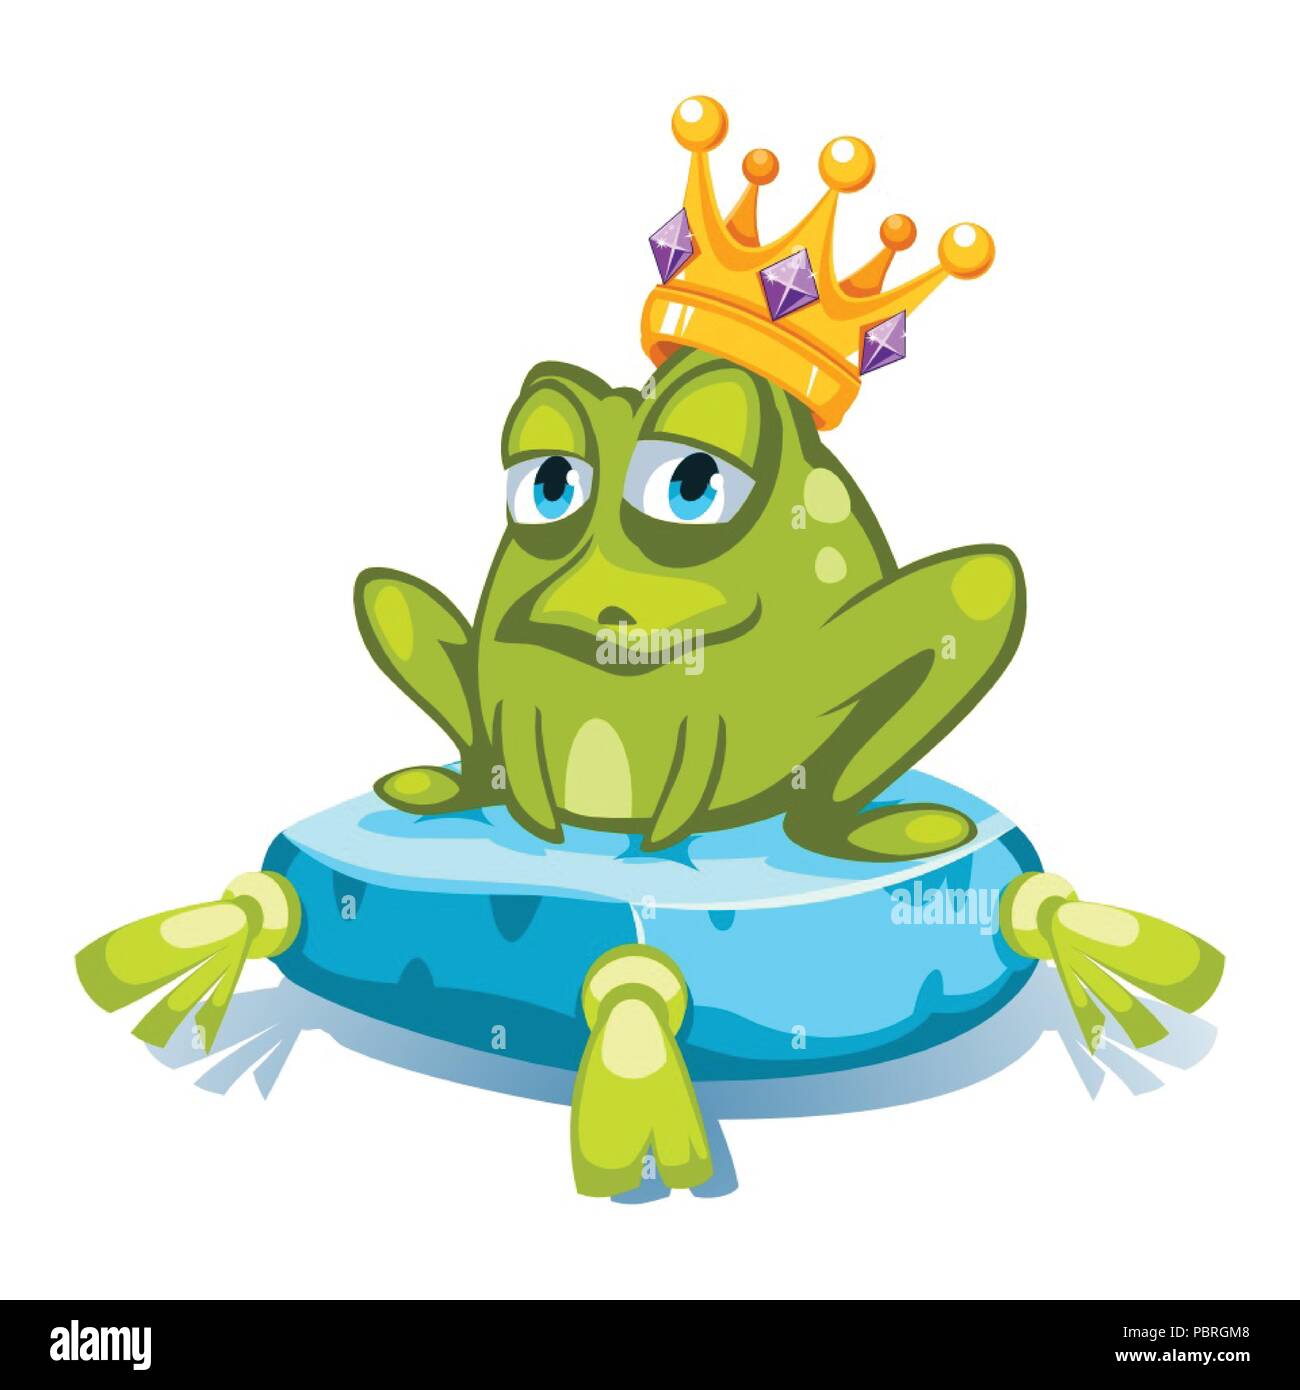 Cartoon caractères grenouille verte avec une couronne avec des pierres précieuses, assis sur un coussin bleu Illustration de Vecteur